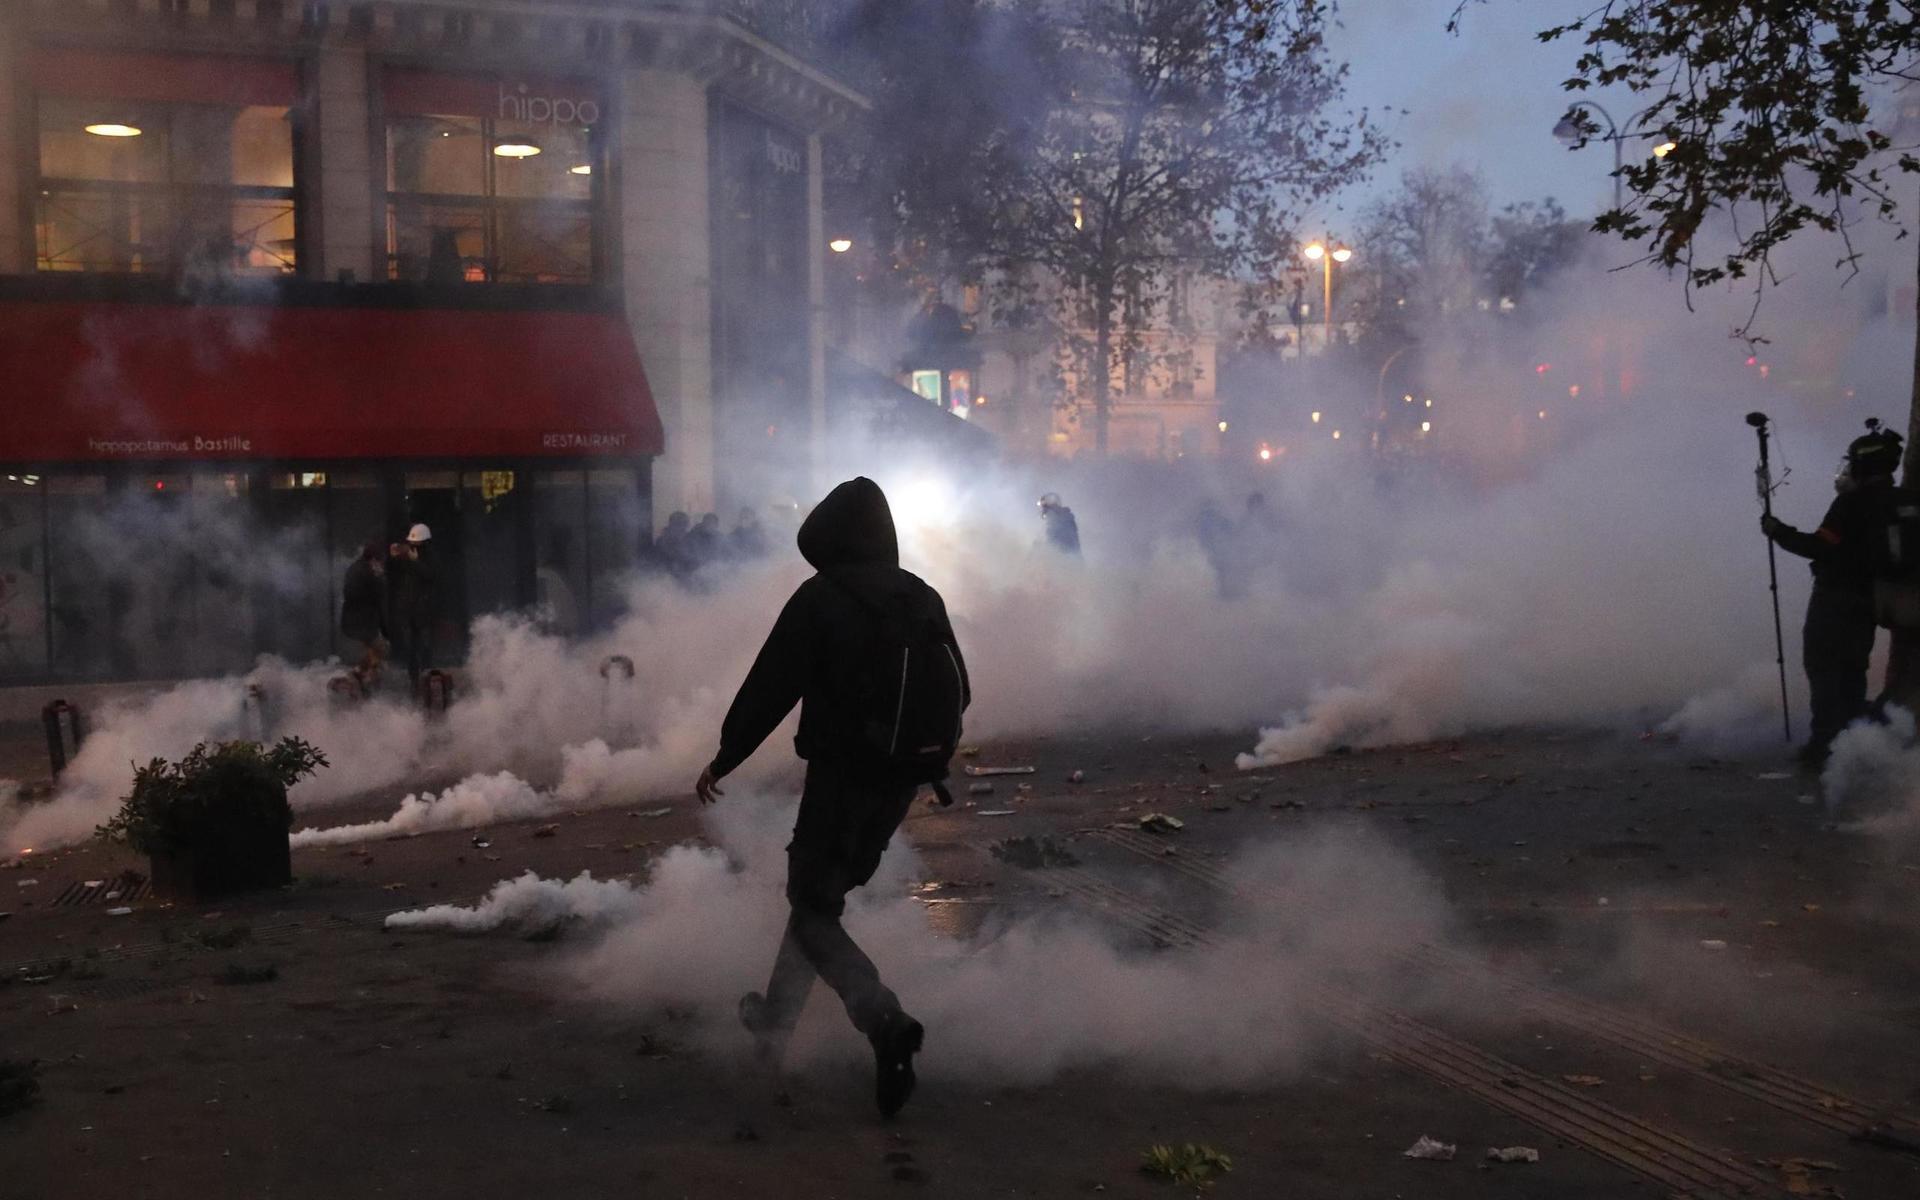 Tårgas användes mot demonstranterna.